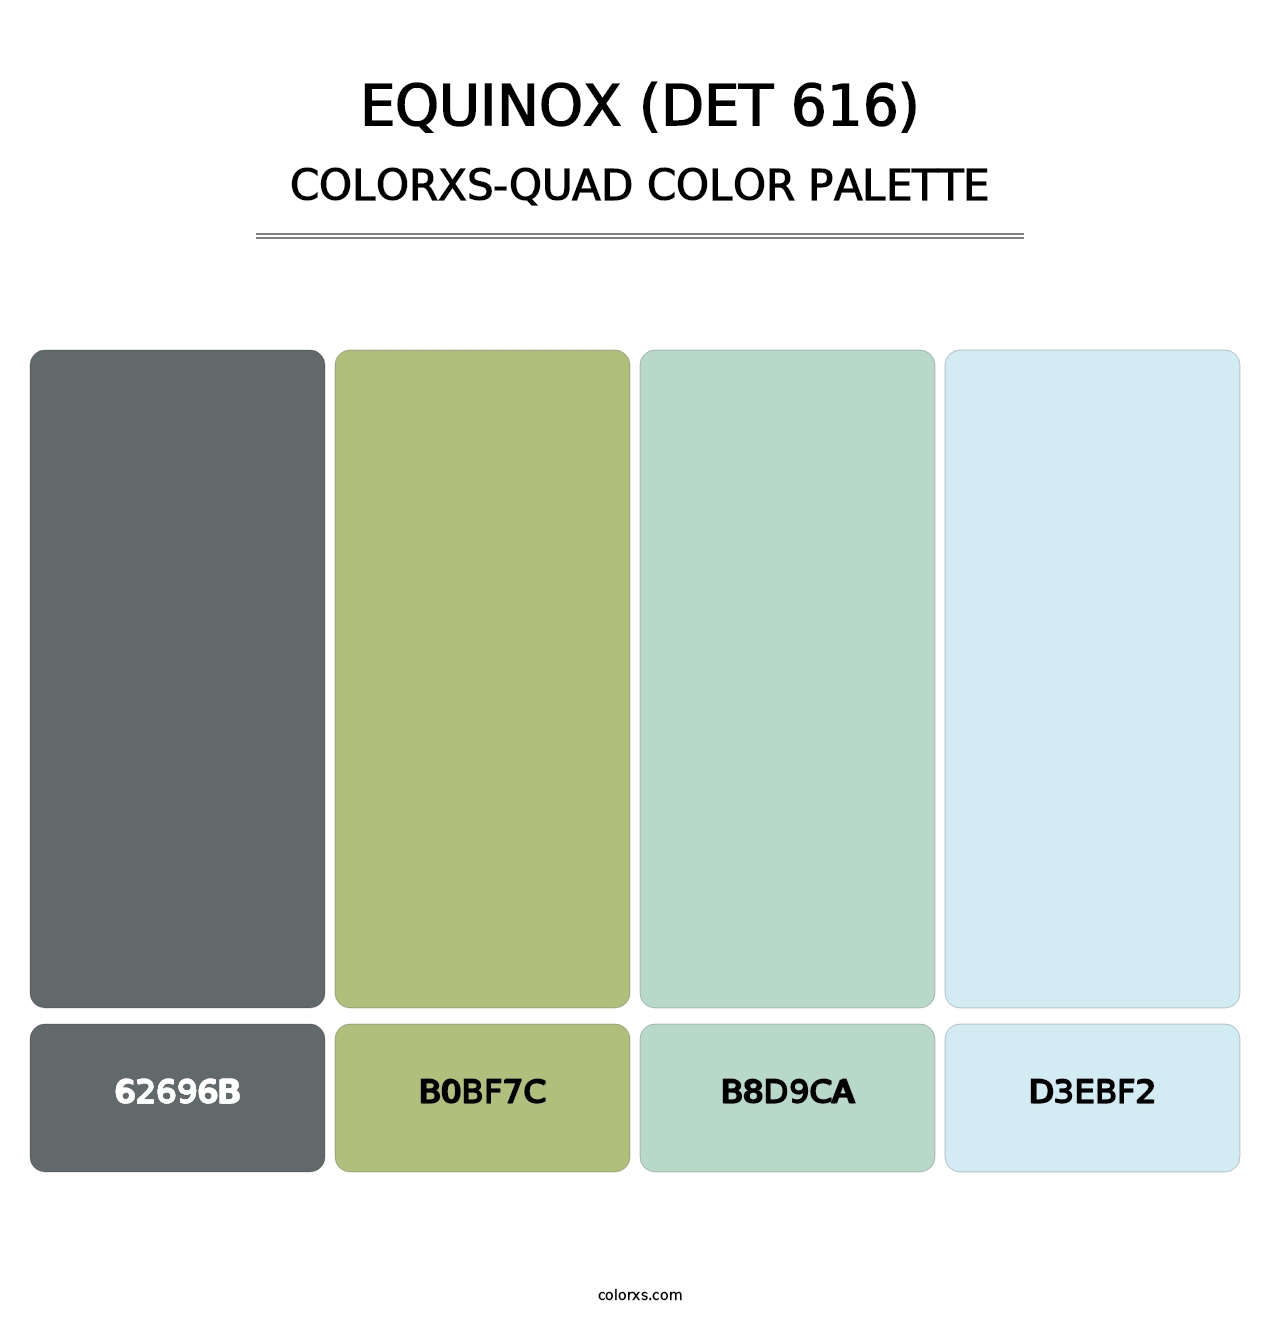 Equinox (DET 616) - Colorxs Quad Palette